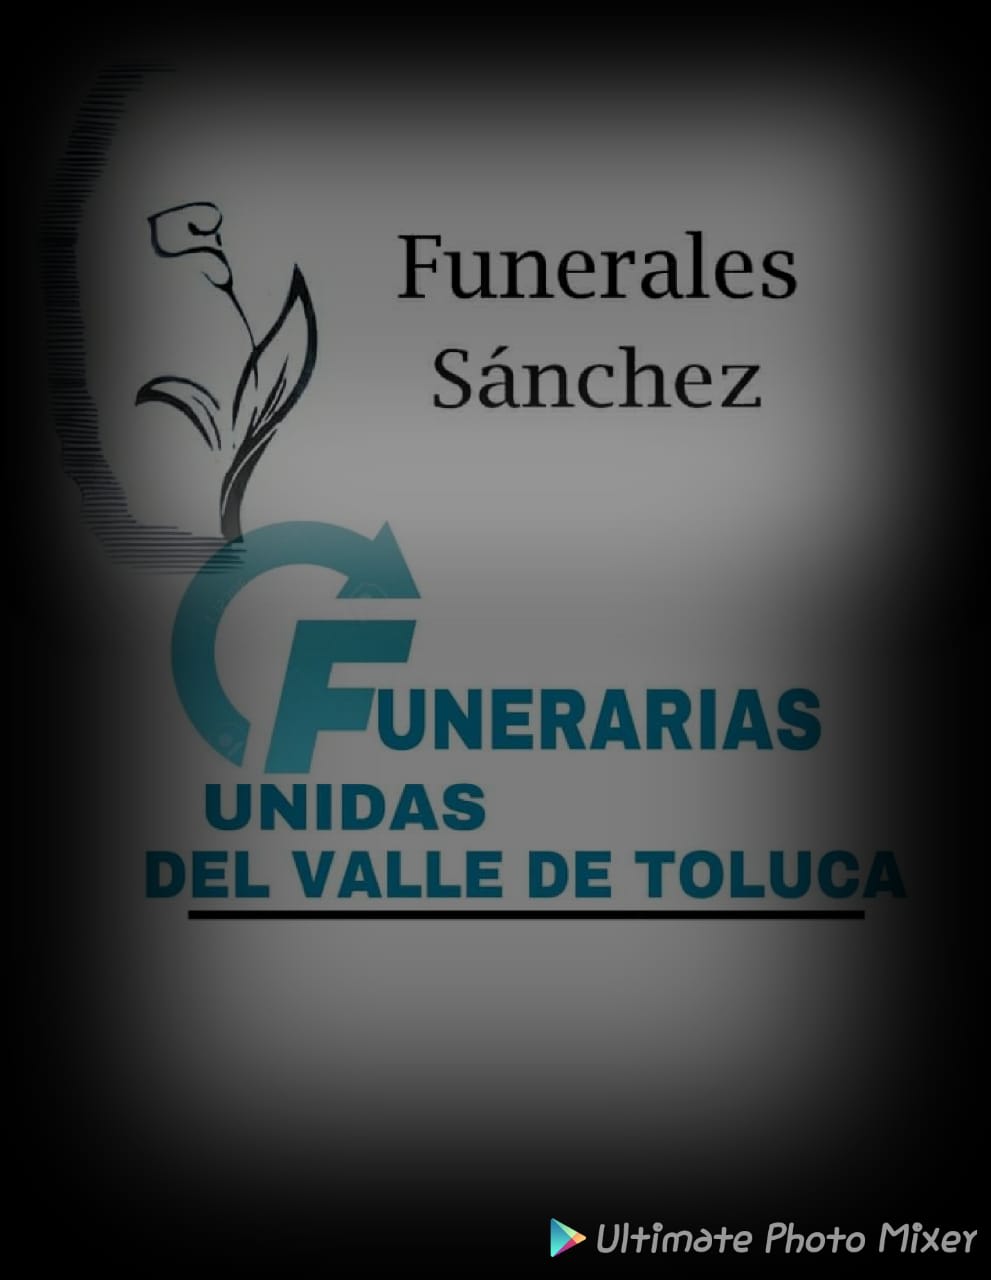 Funerales Sanchez Toluca